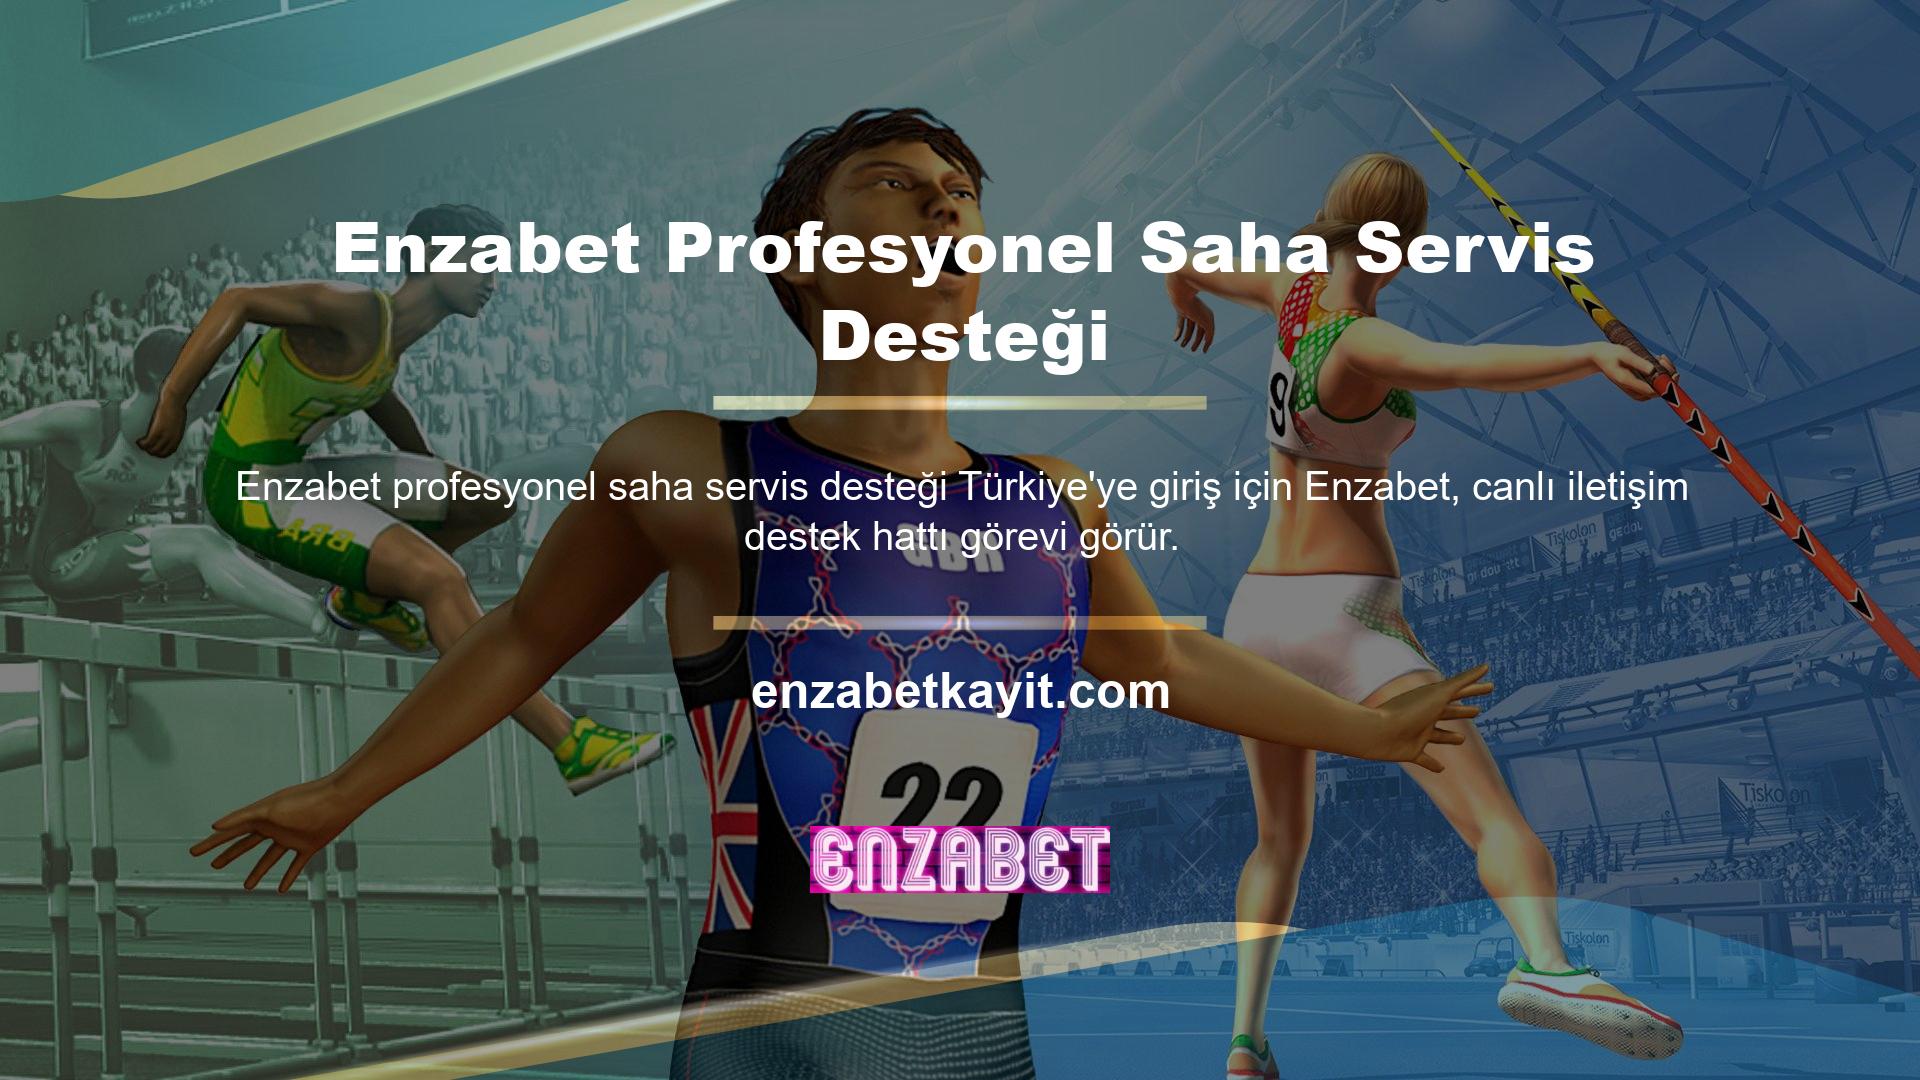 Enzabet bahis sitesi, Türkiye'nin en yeni bahis sitelerinden biri olup, çevrim içi sorunlarına çözümler sunarak oyuncuların ilgisini çekmektedir